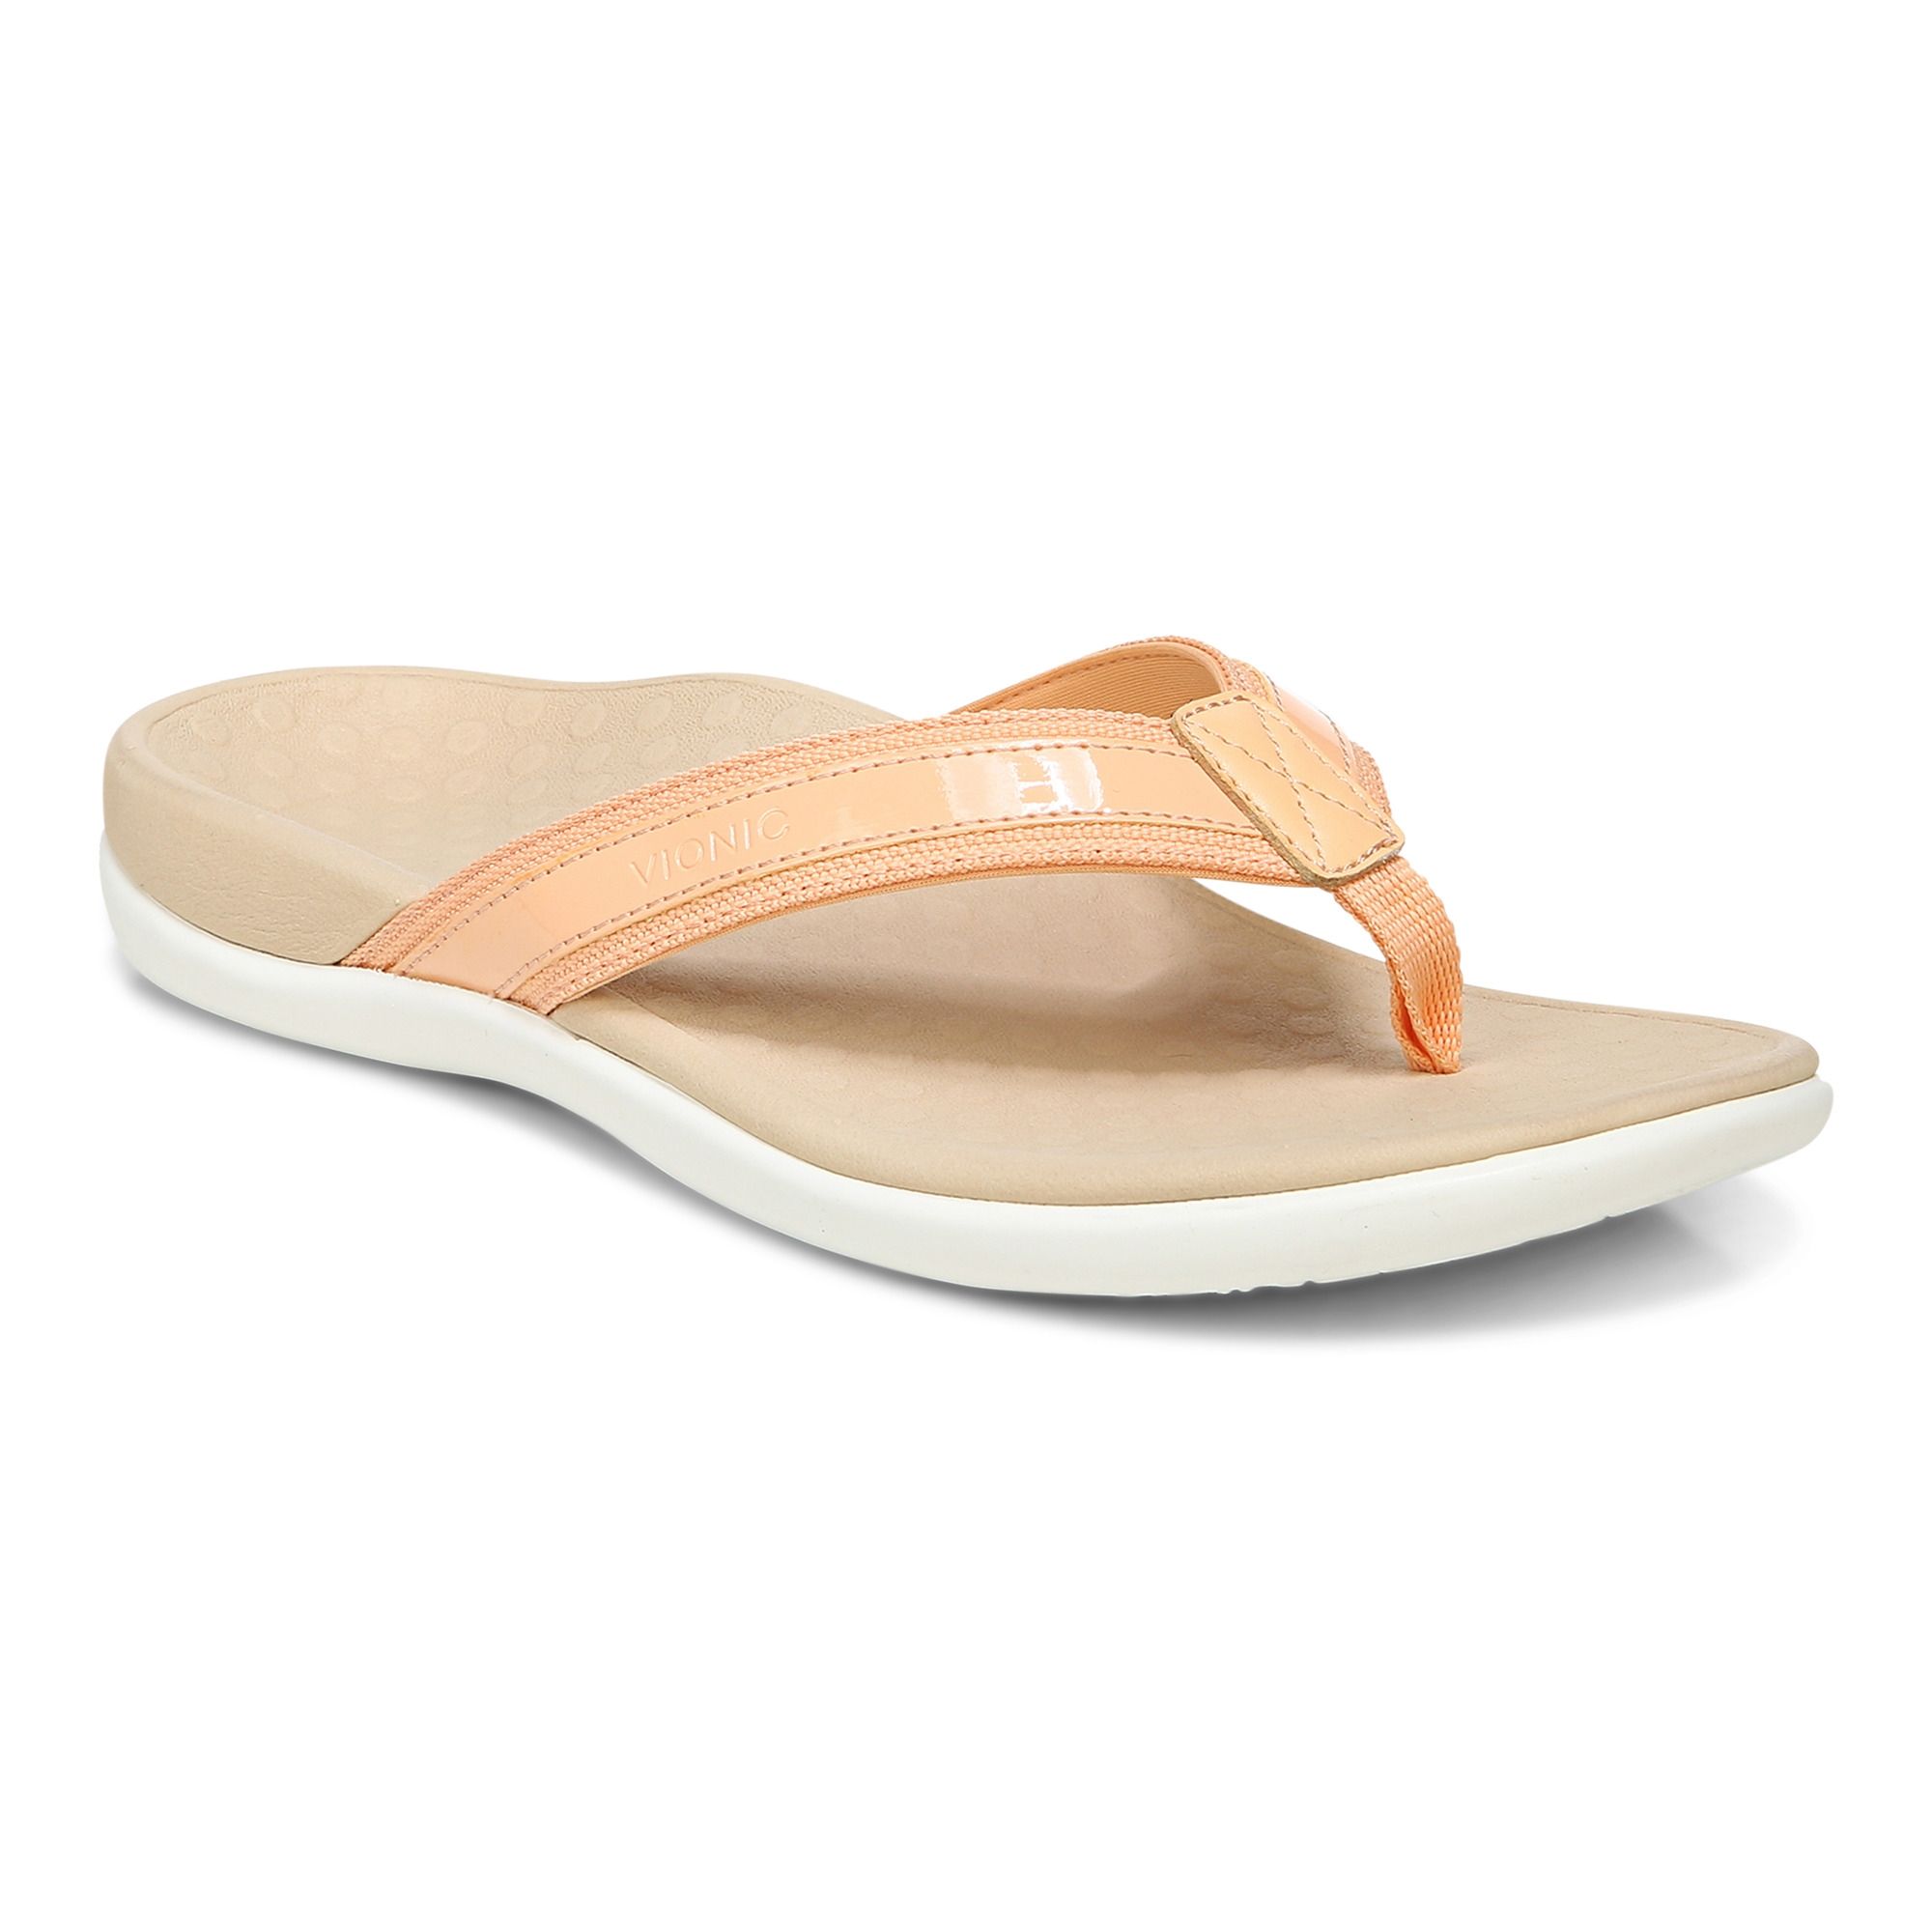 Vionic Women's Tide II Toe Post Sandals Apricot